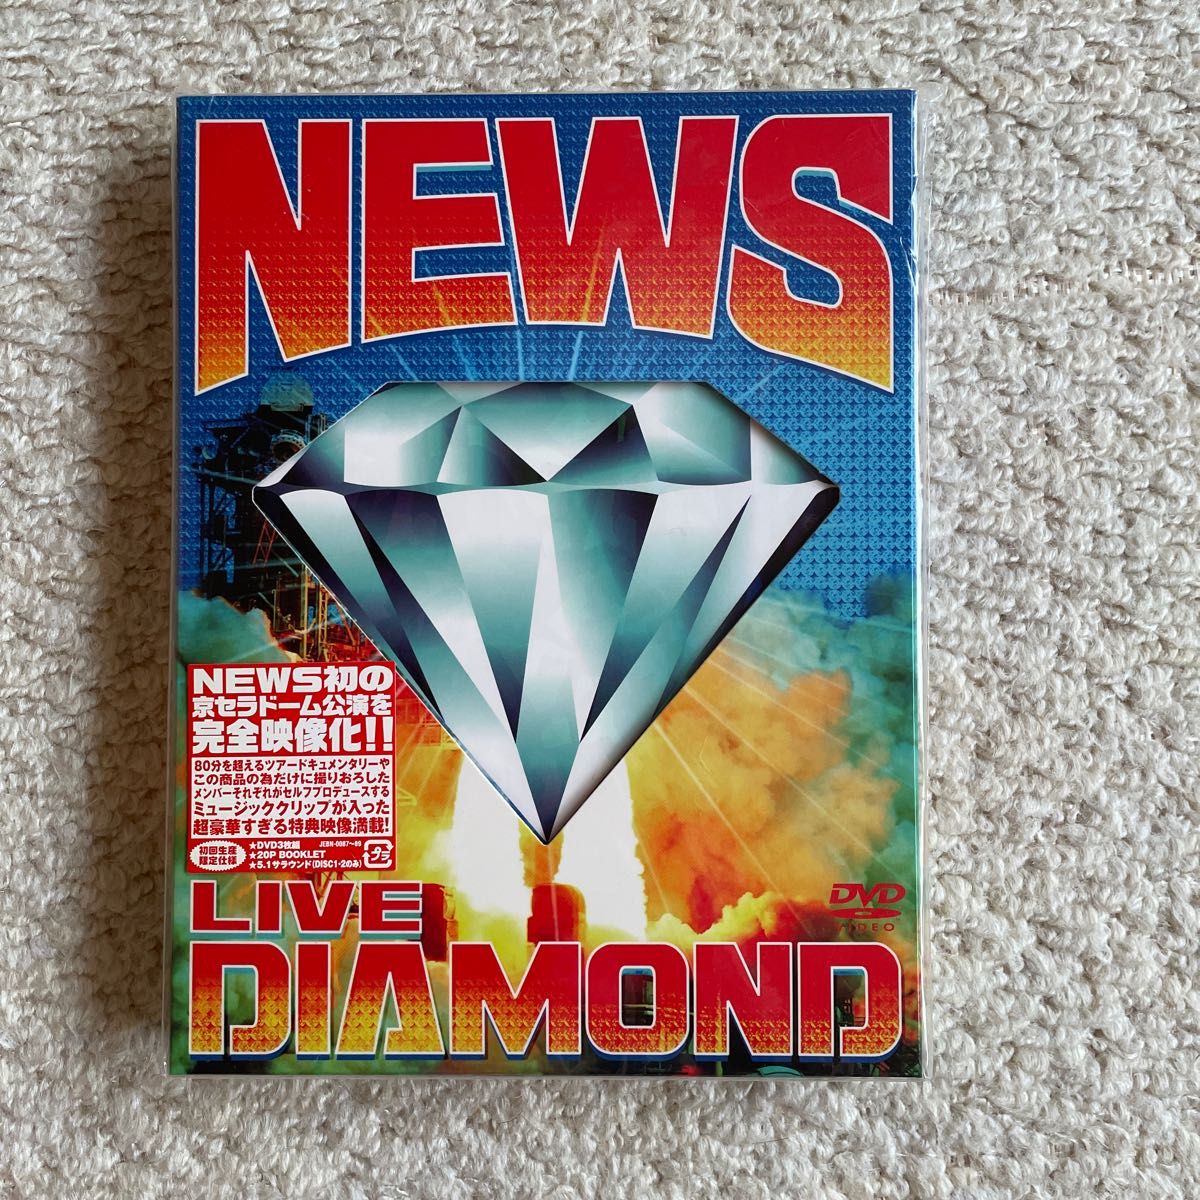 NEWS DVD DIAMOND